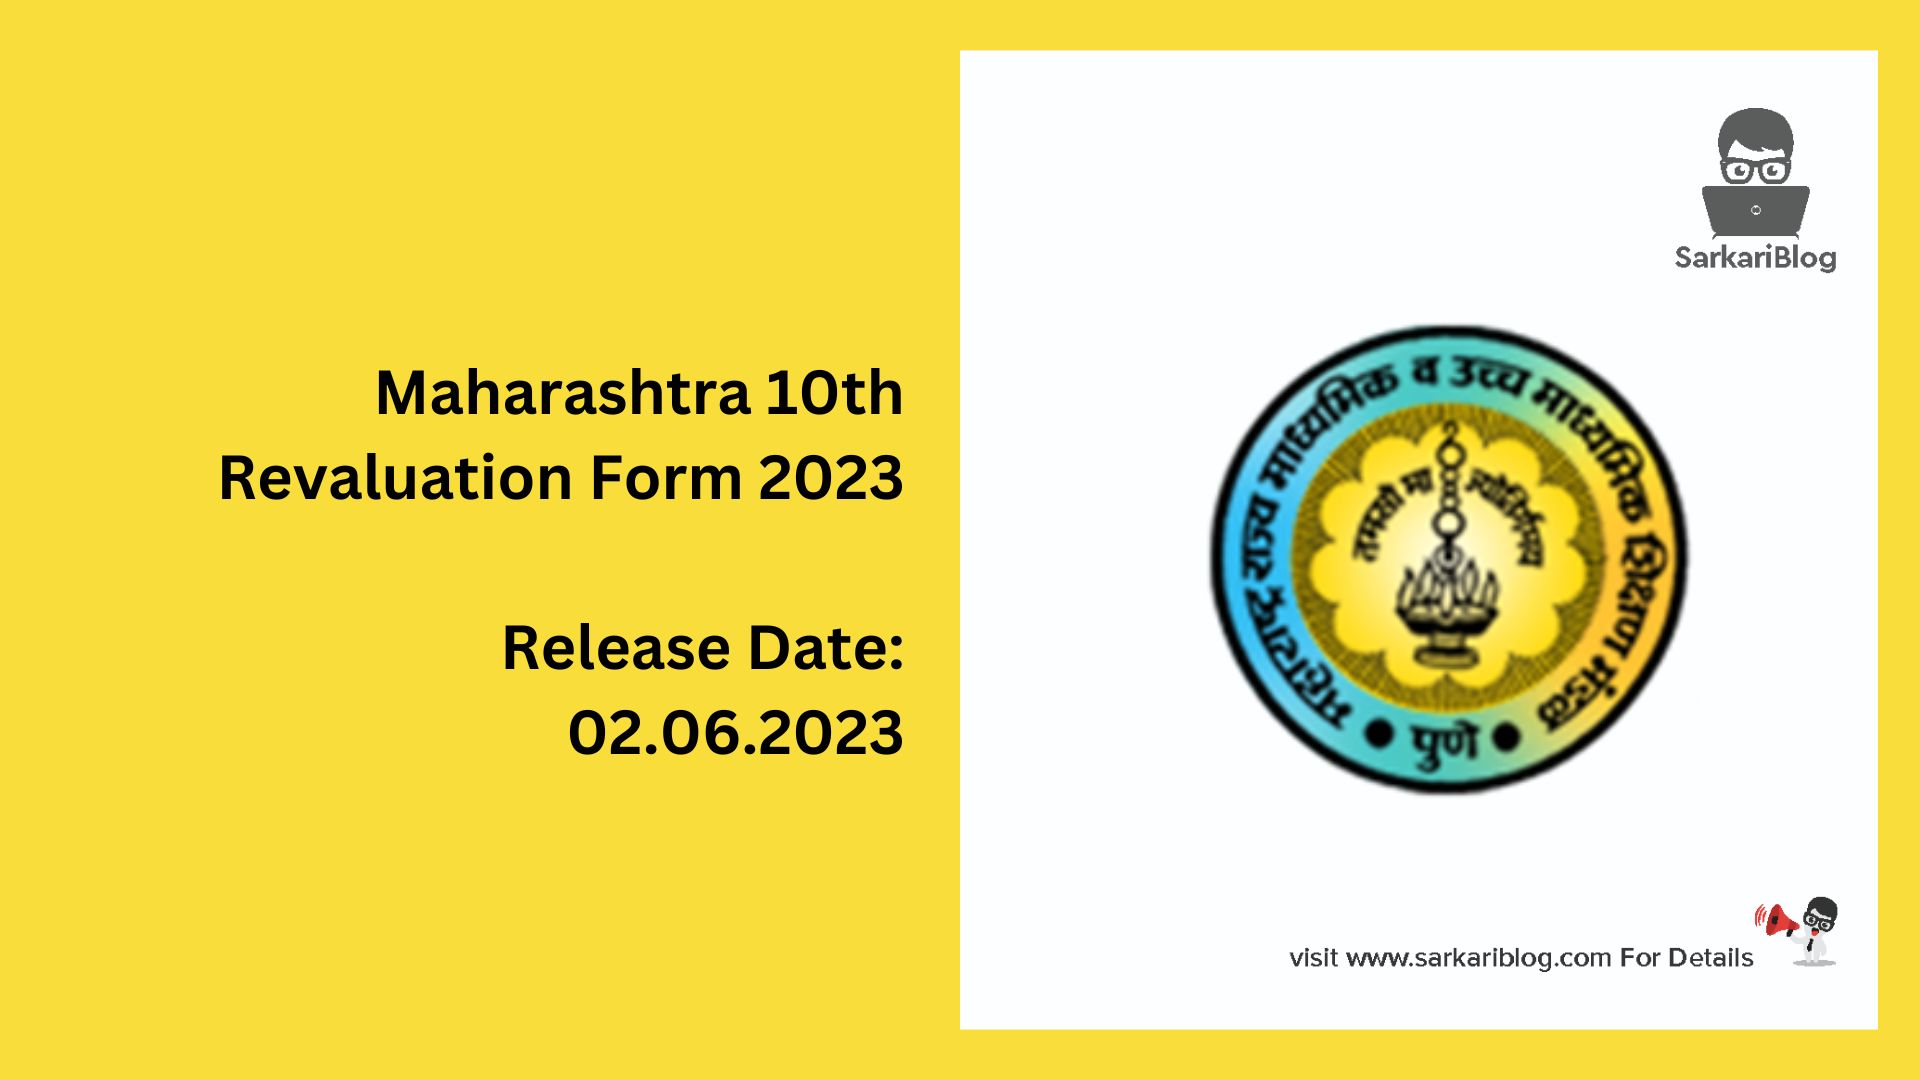 Maharashtra 10th Revaluation Form 2023